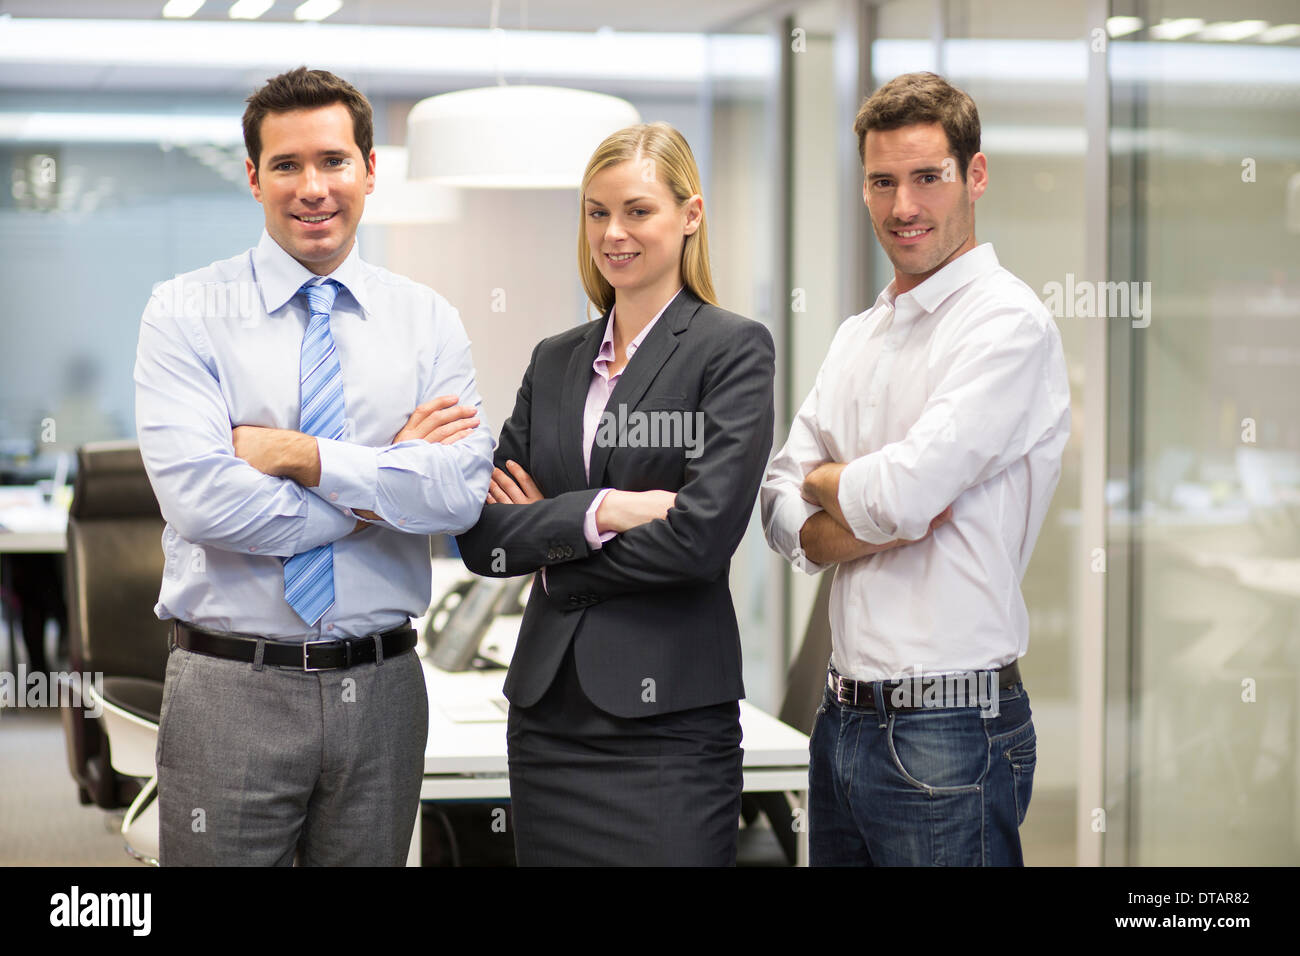 Retrato de sonriente equipo empresarial en oficina, mirando la cámara Foto de stock